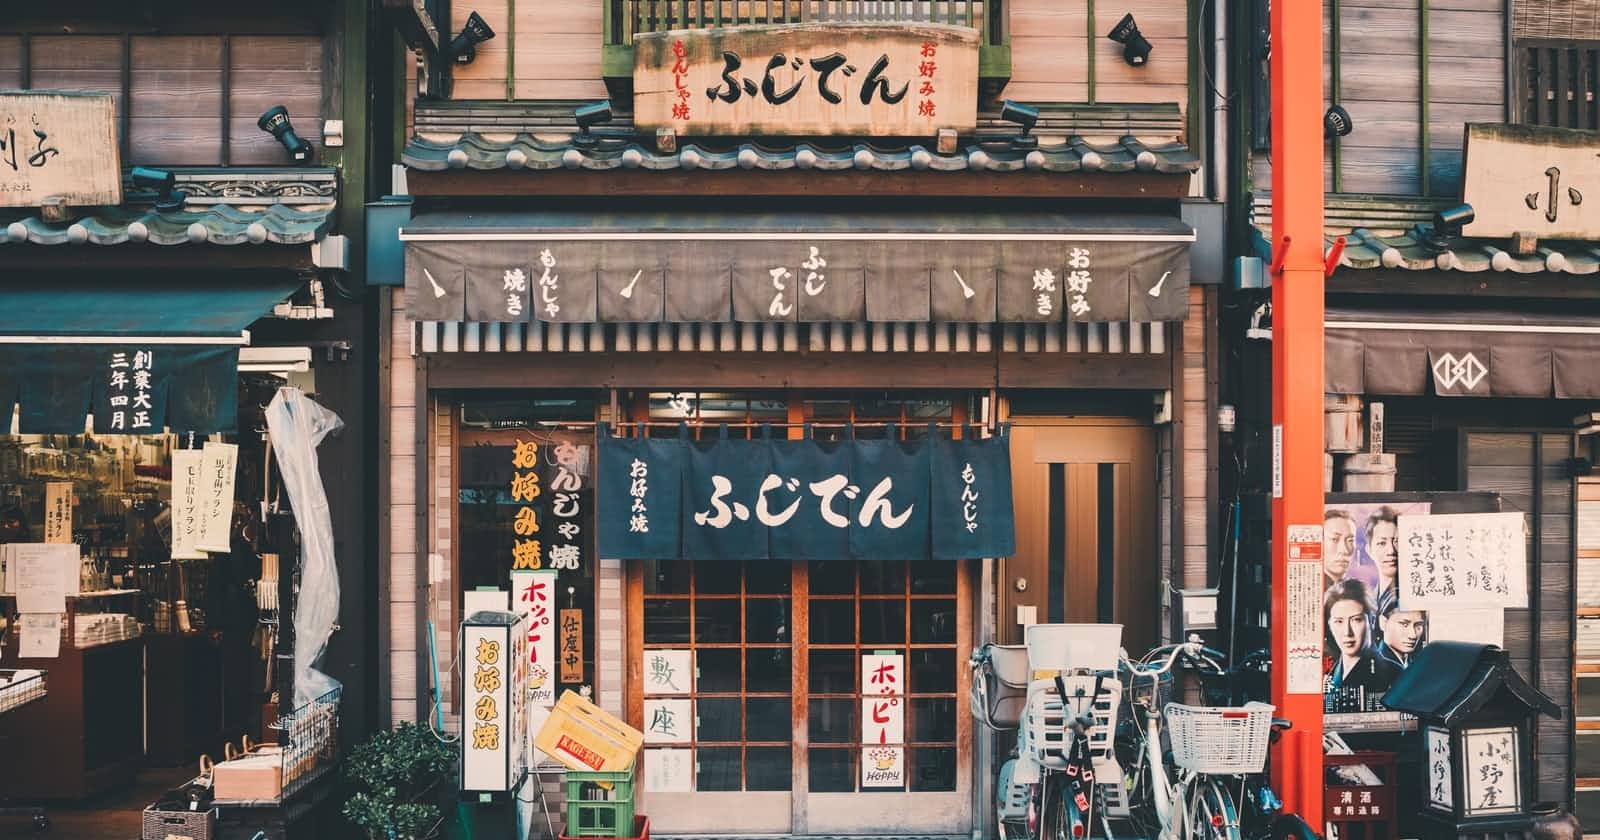 吃在日本 - Rice, Noodle, Fish: Deep Travels Through Japan's Food Culture